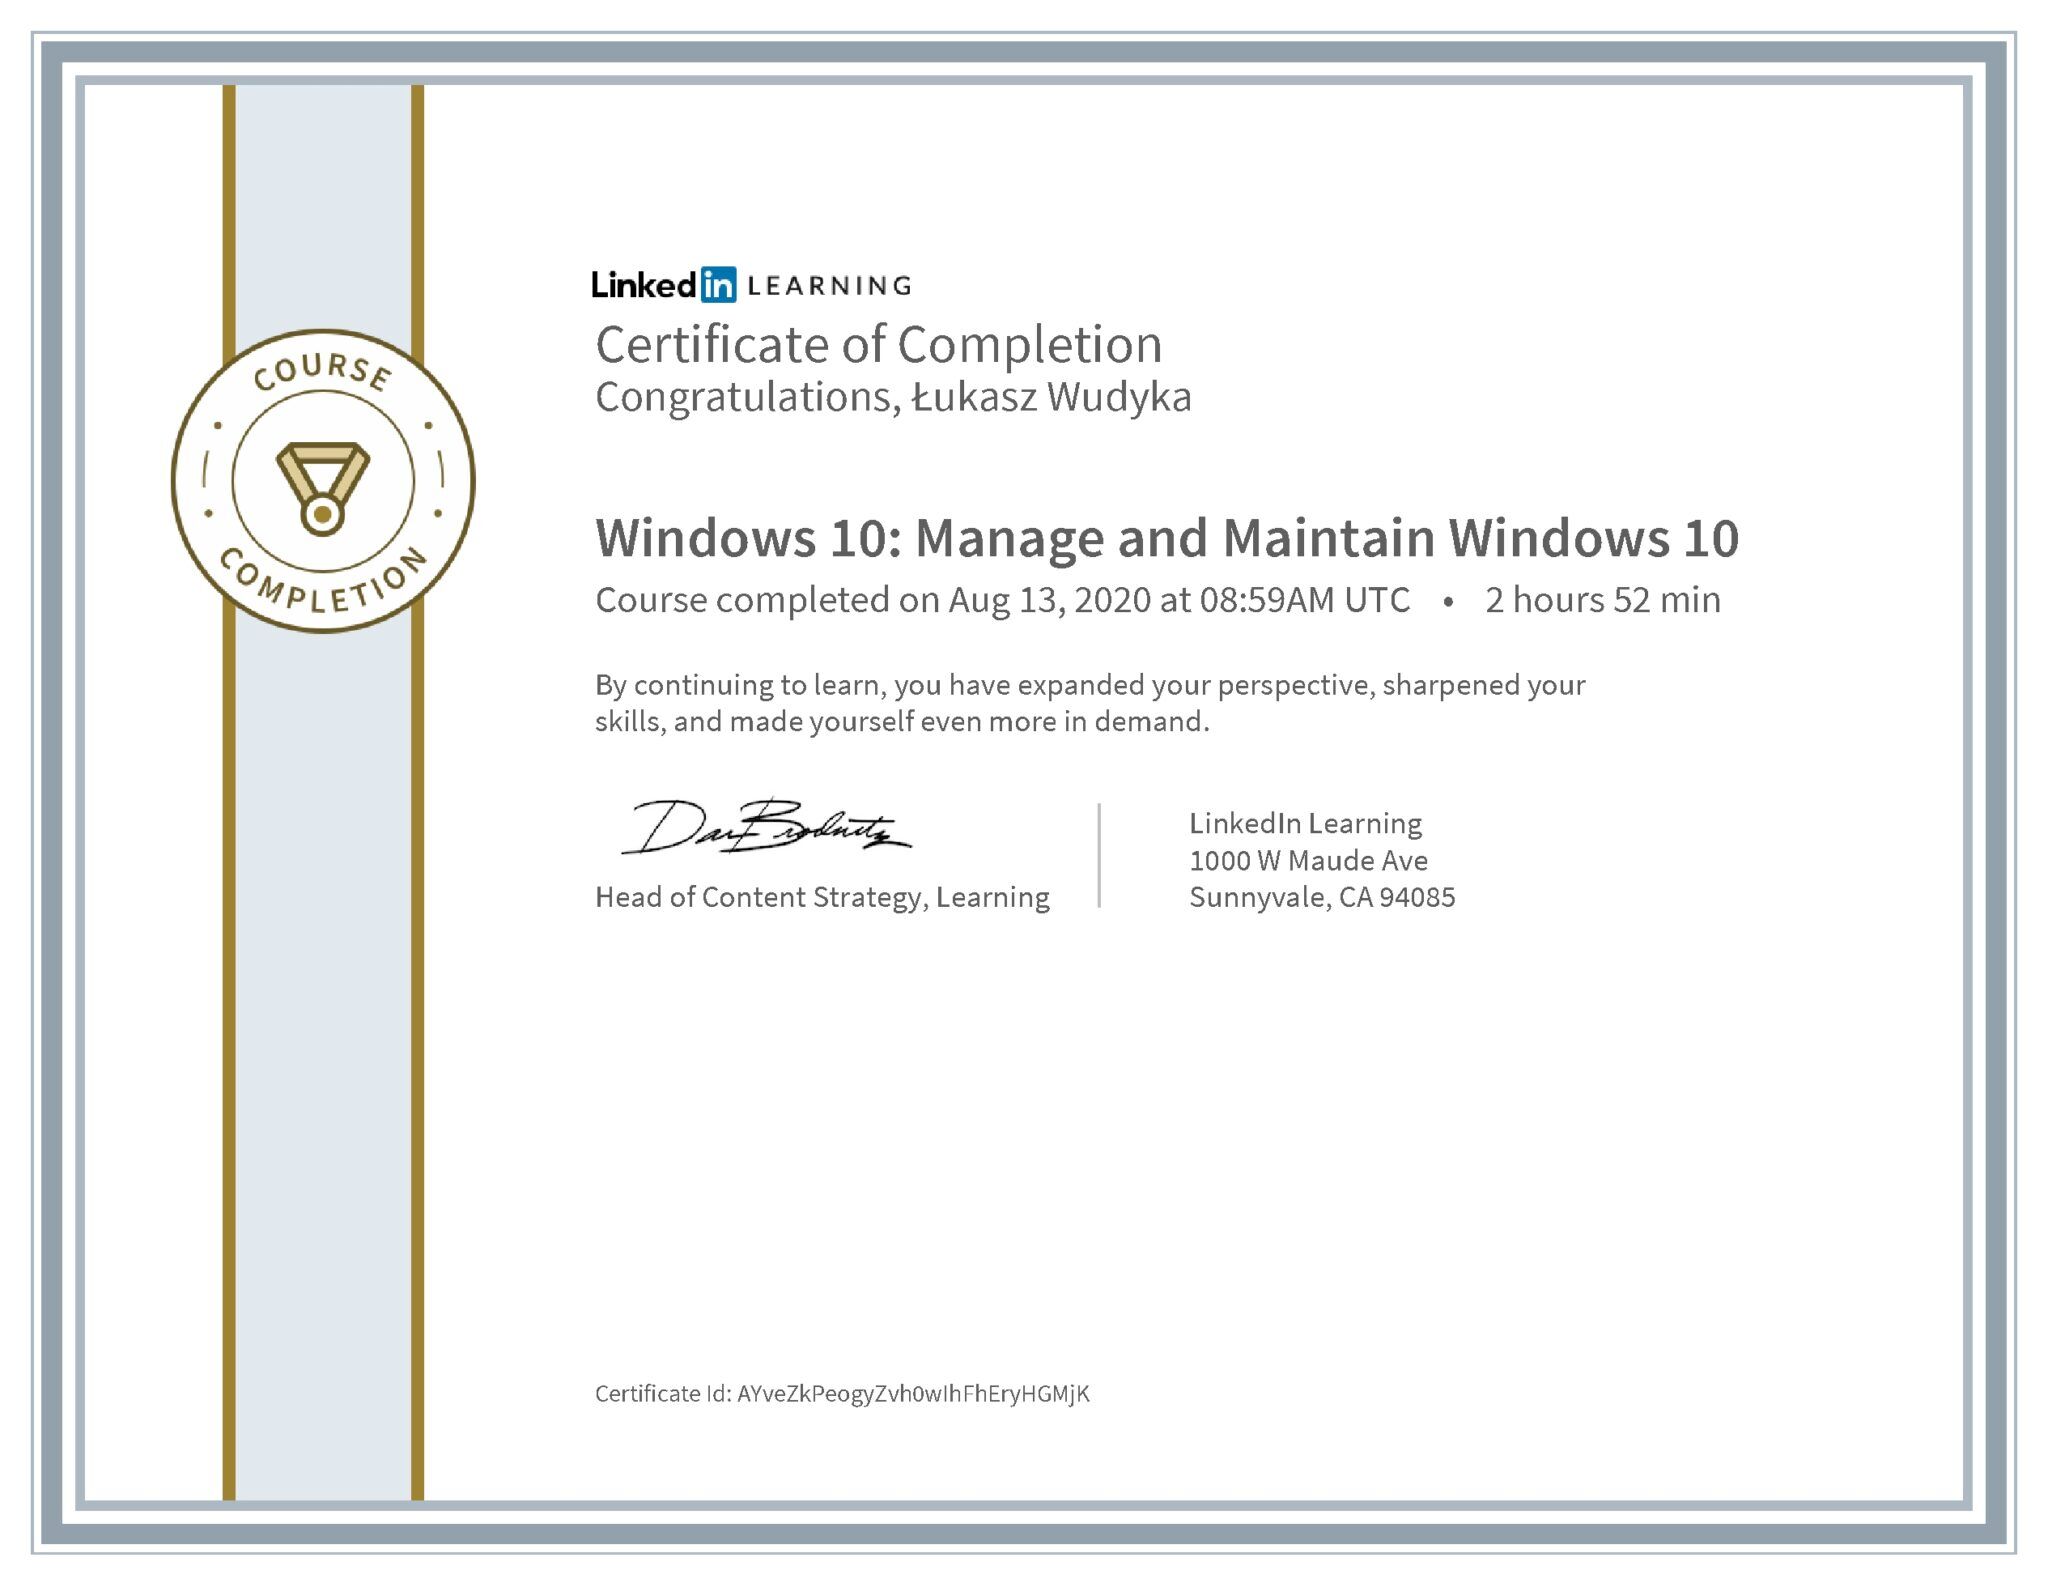 Łukasz Wudyka certyfikat LinkedIn Windows 10: Manage and Maintain Windows 10